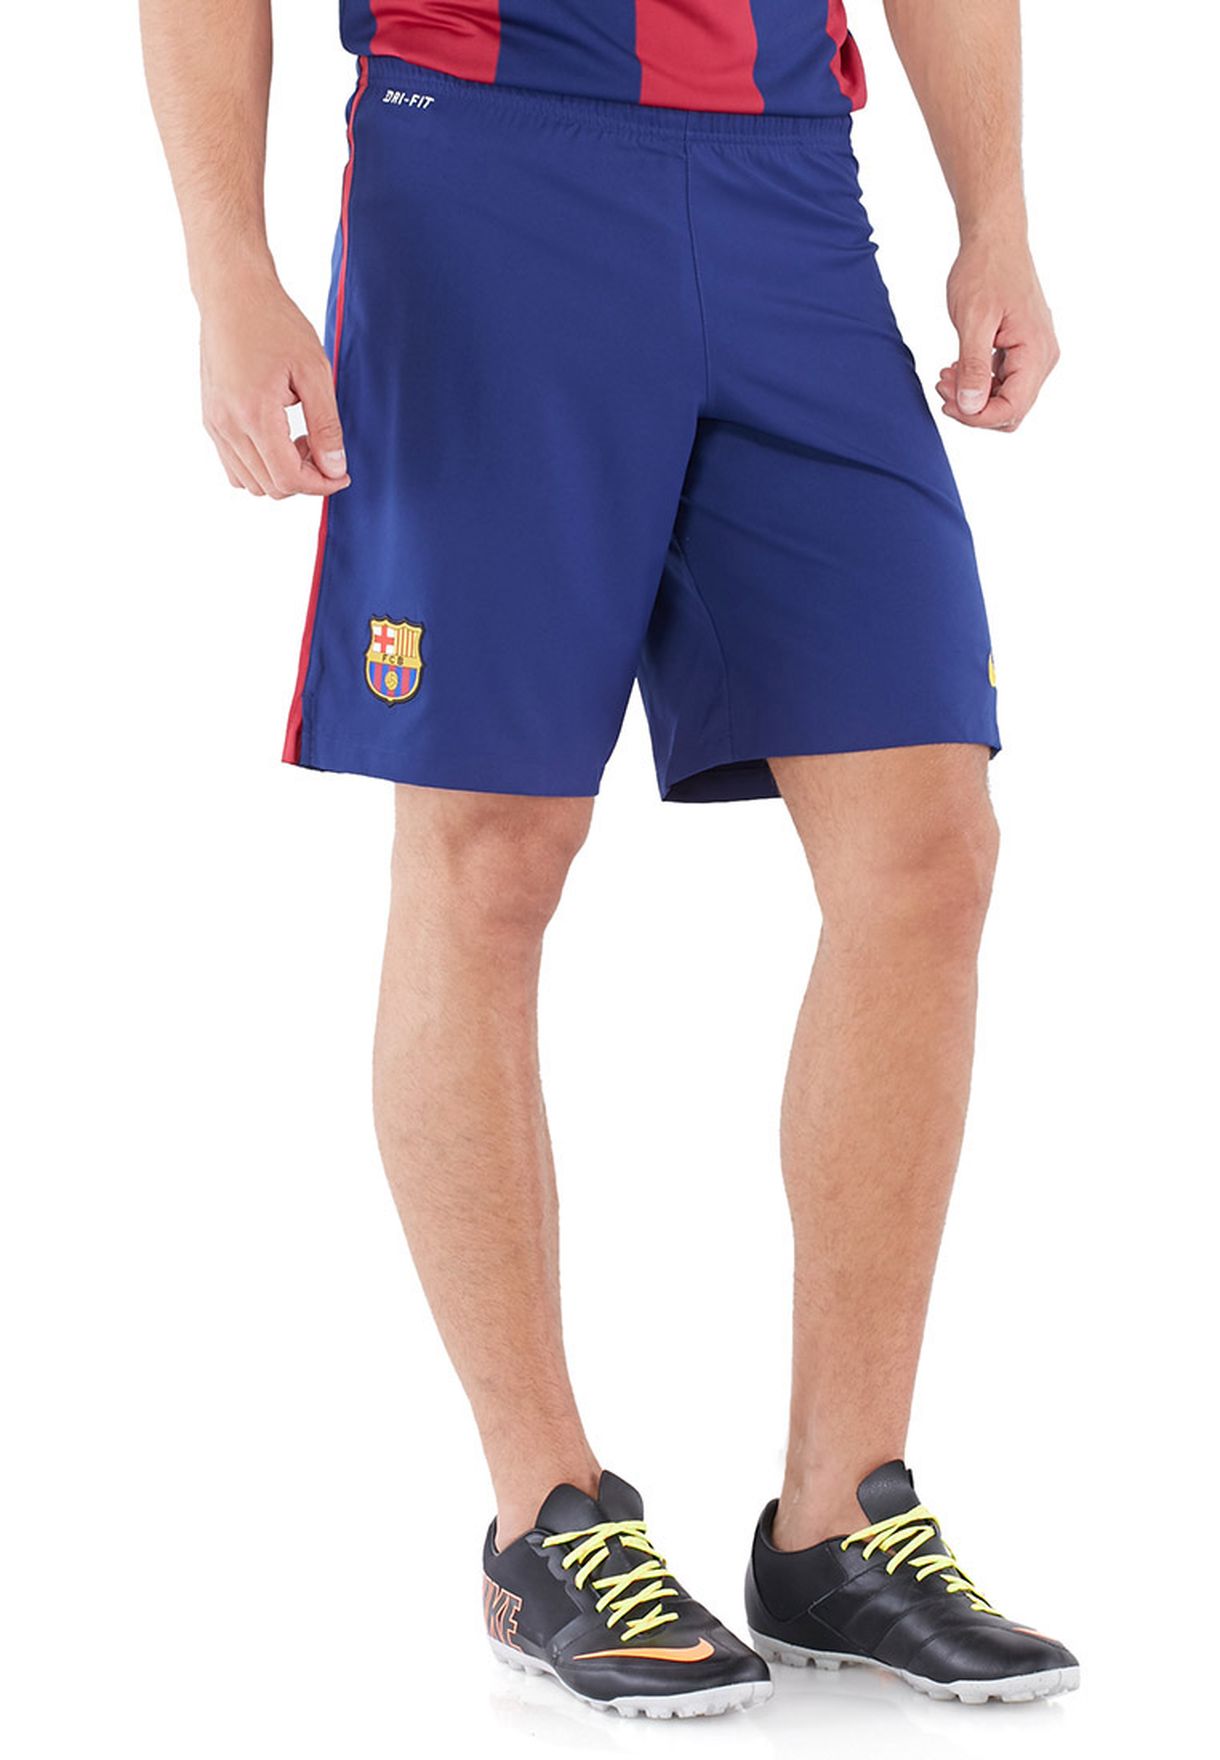 fcb shorts